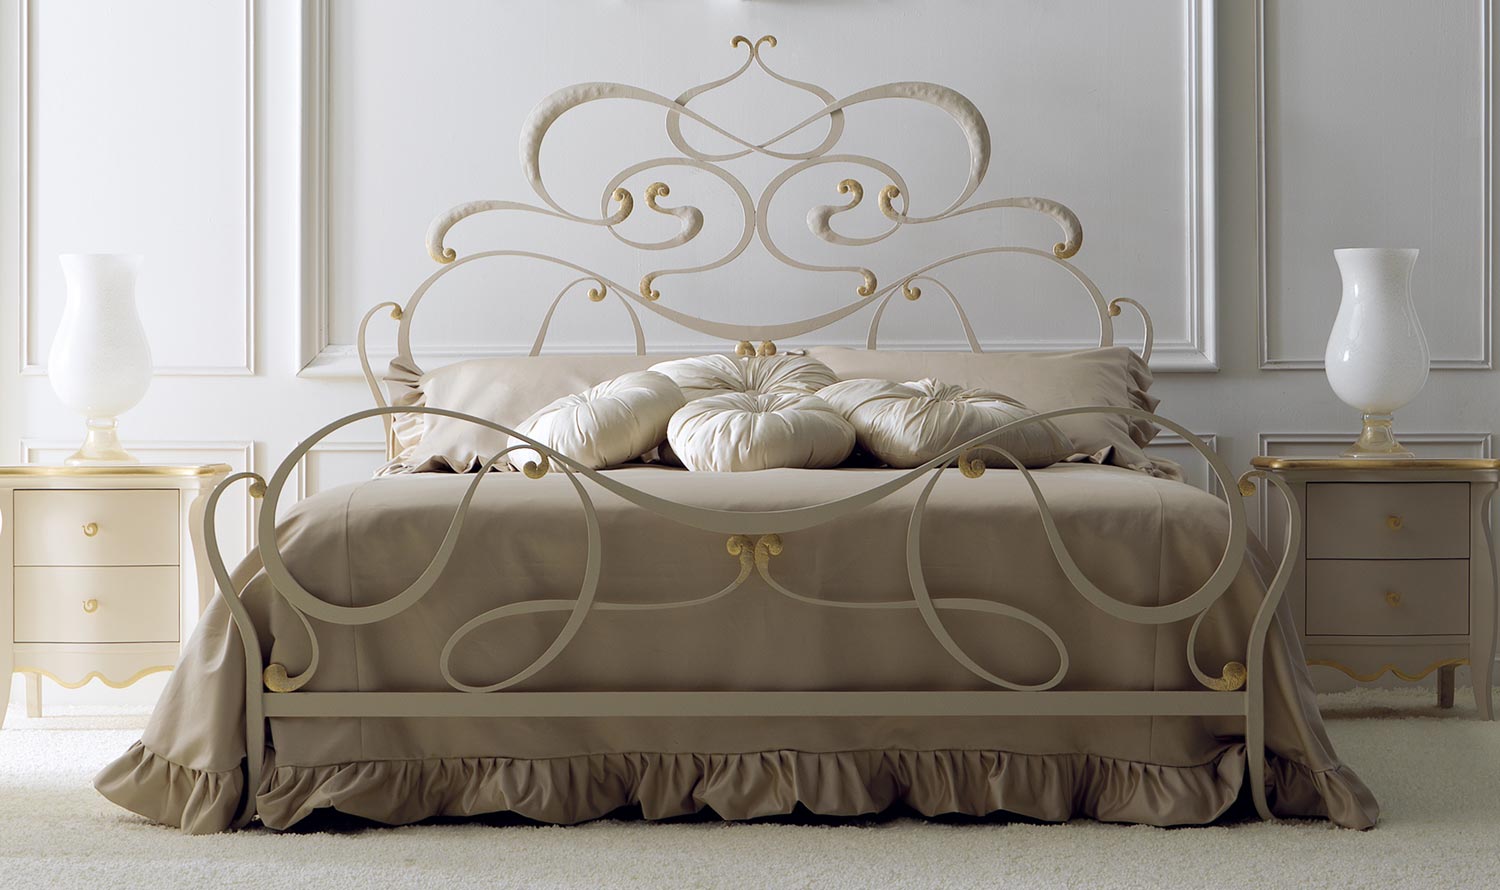 Бело-золотистая кованая кровать с фигурными элементами